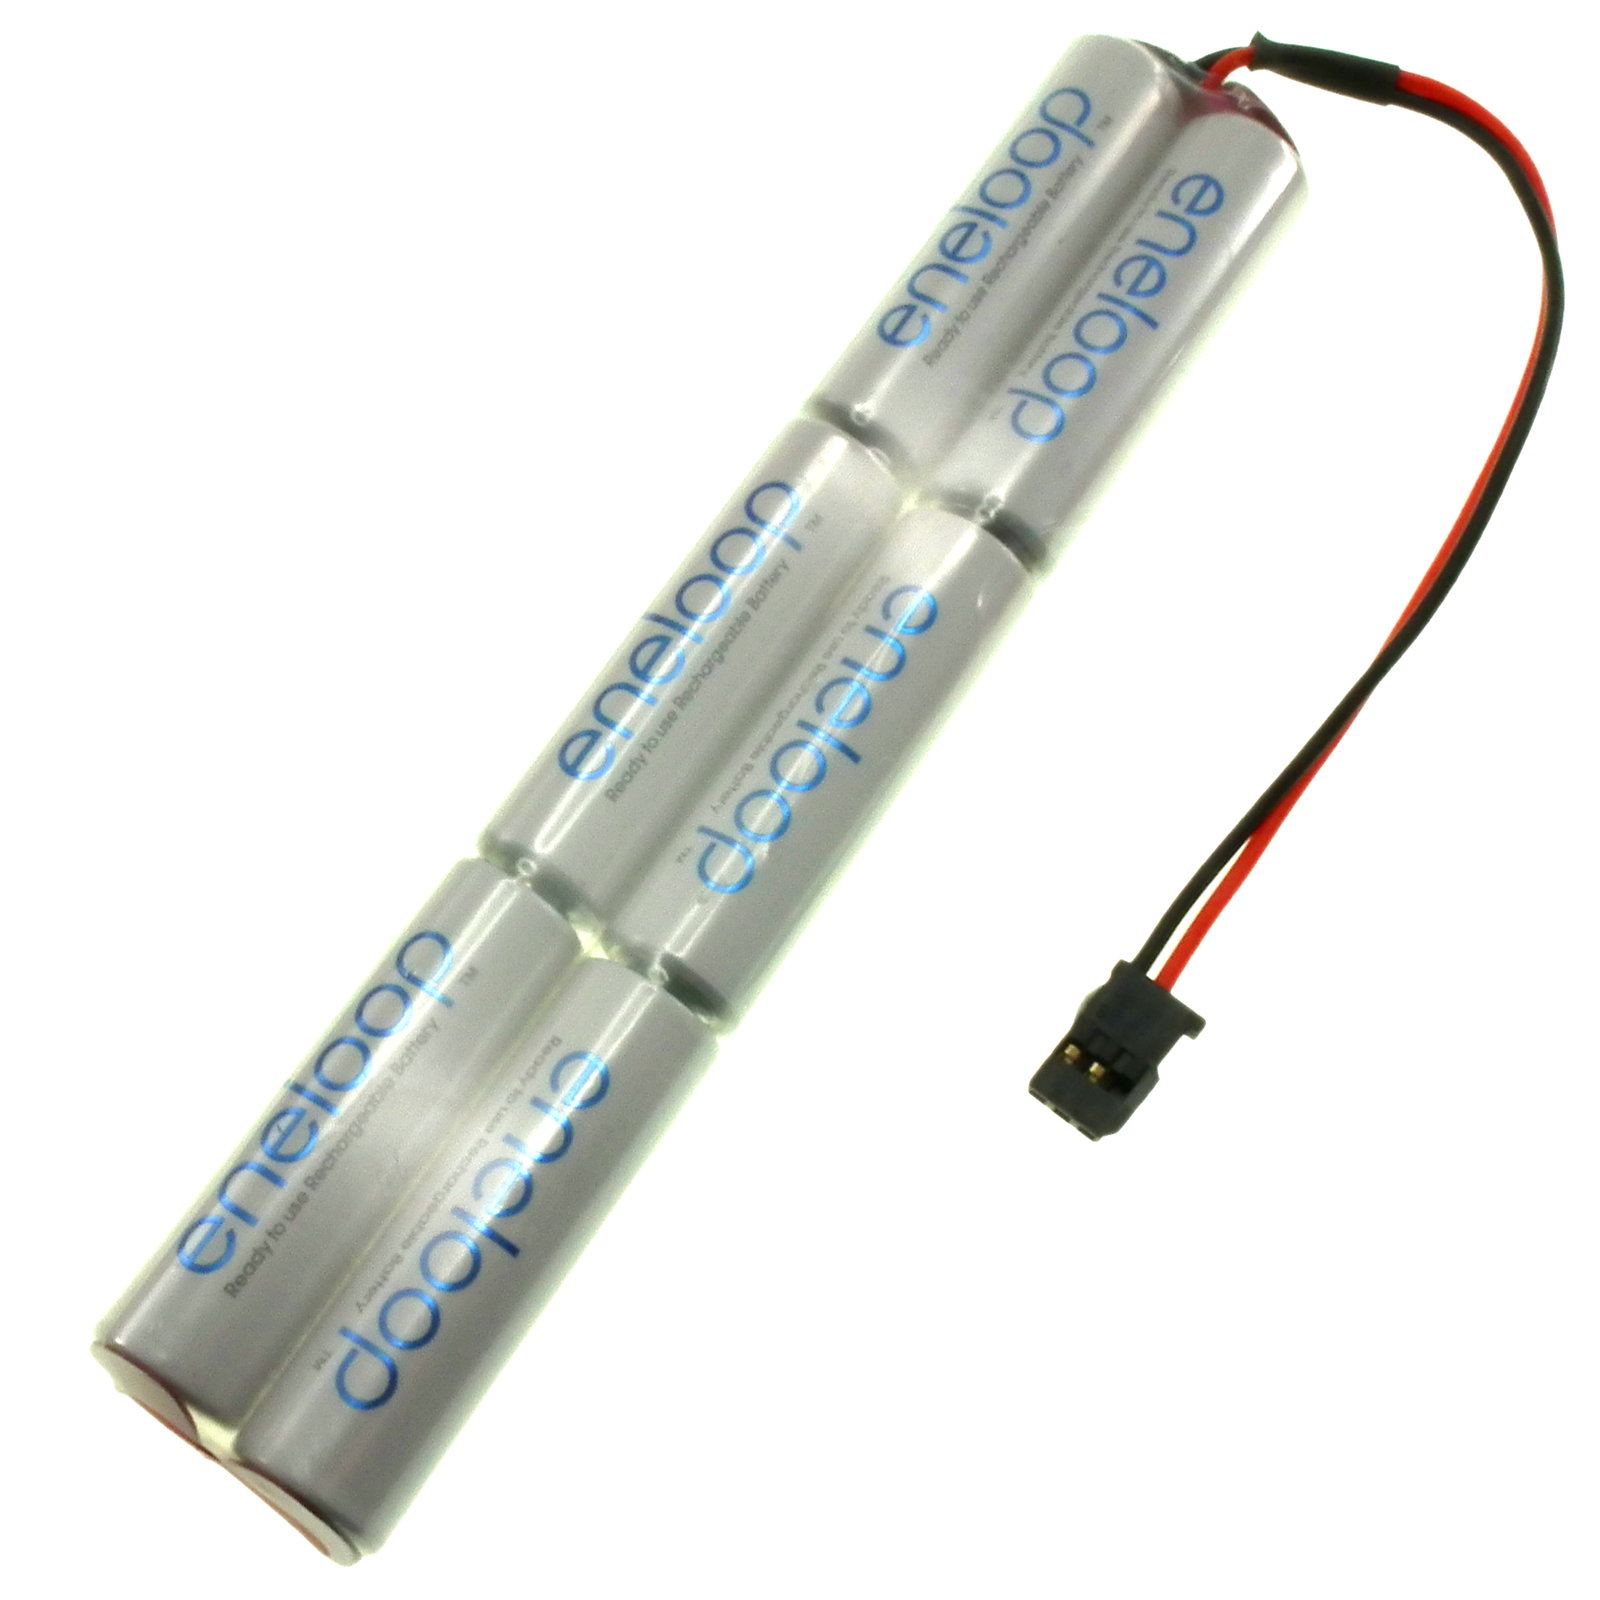 are eneloop batteries lithium